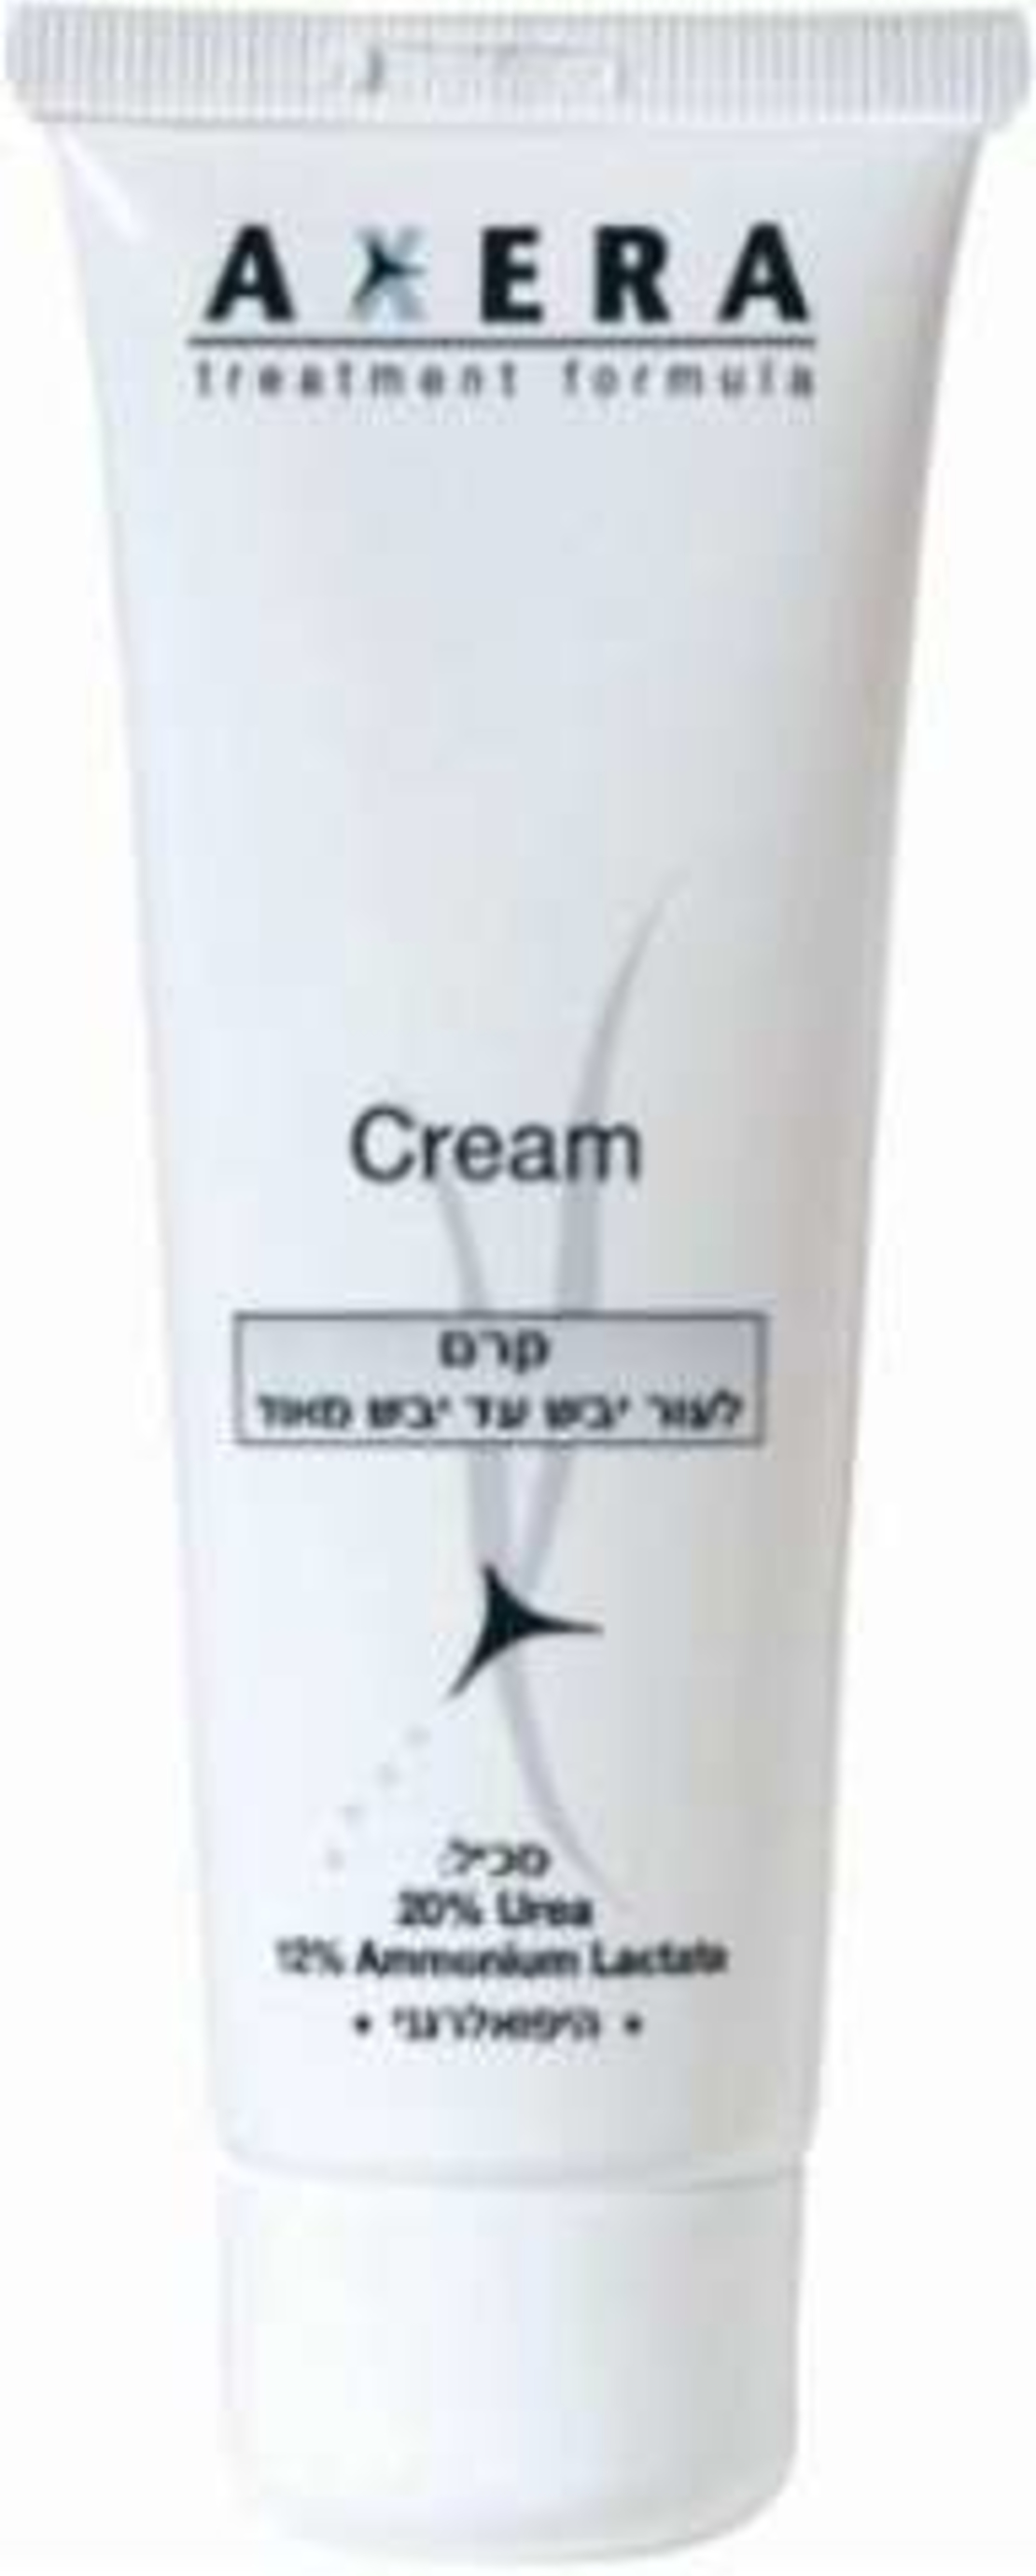 אקסרה קרם - קרם לטיפול בעור יבש וסדוק Axera Cream